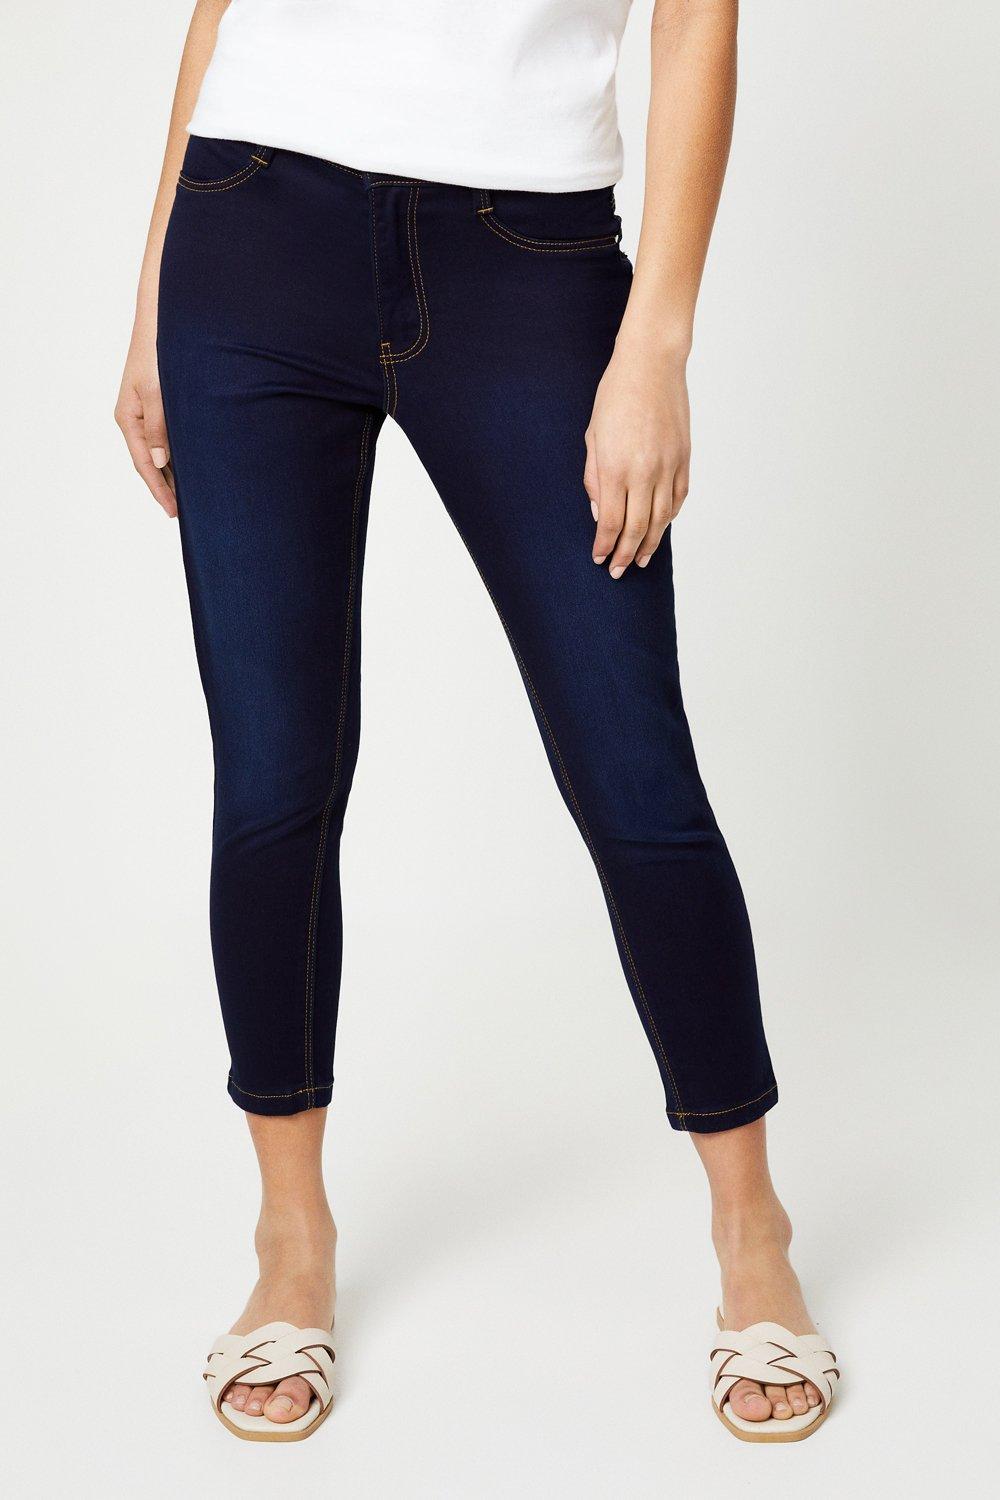 Women’s Petite Skinny Ankle Grazer Jeans - indigo - 12